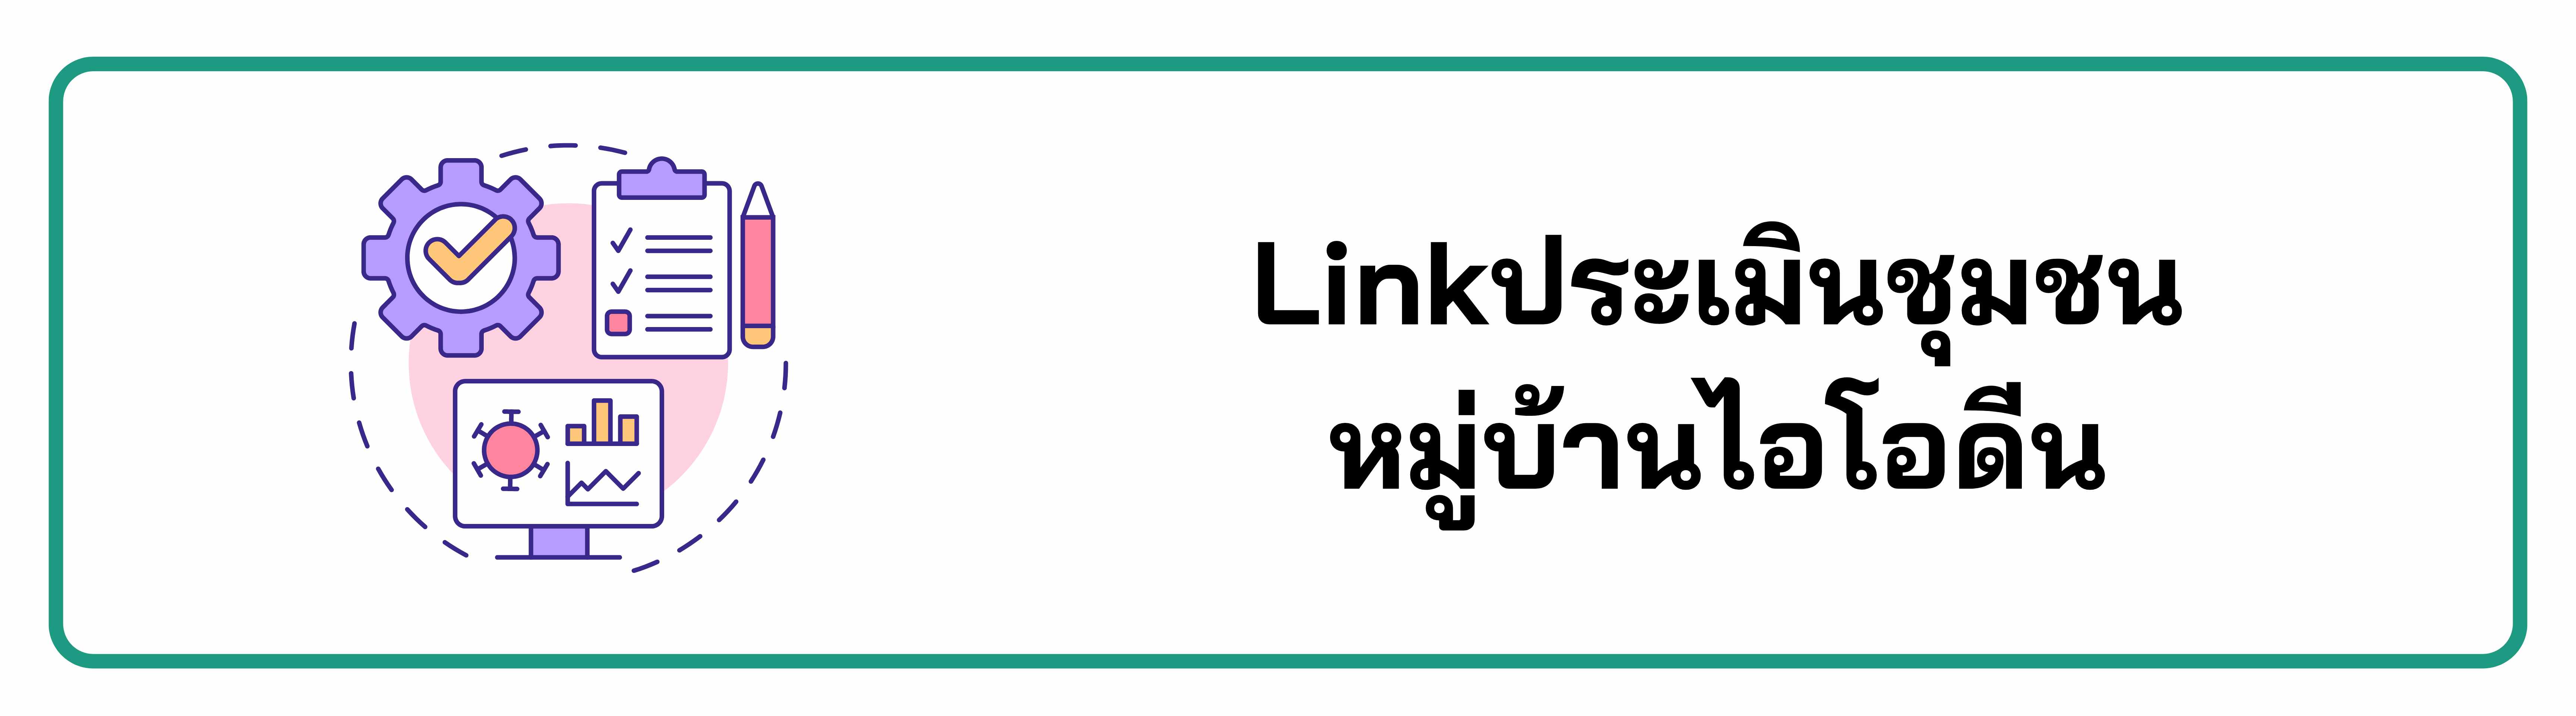 LINKIODINE02